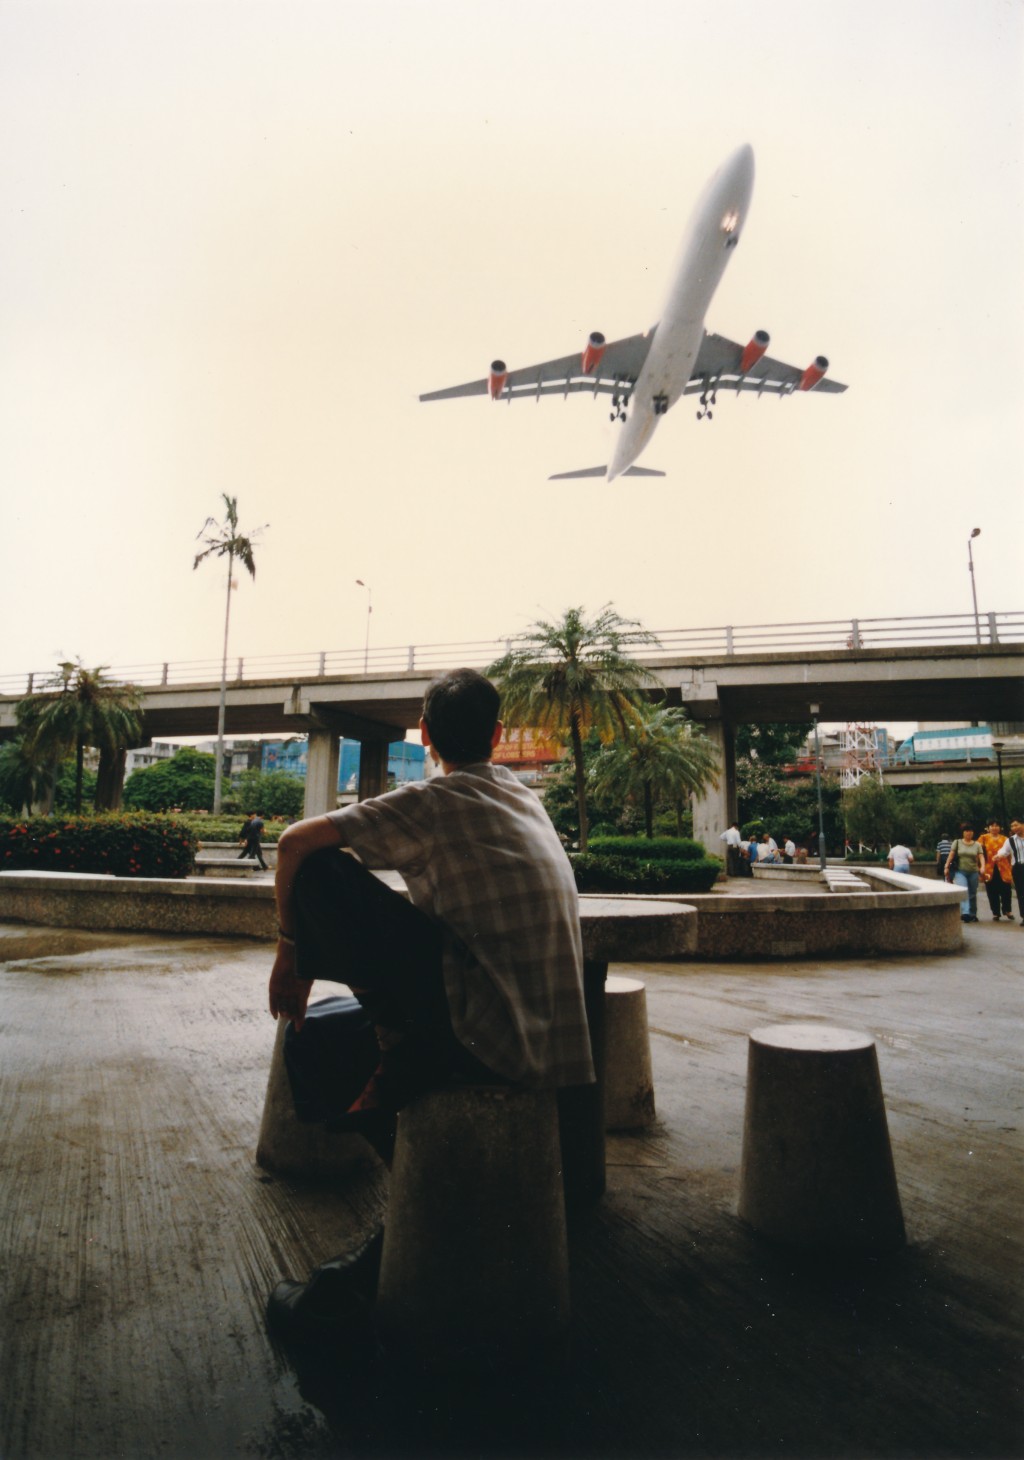 啟德機場每次飛機降落貼近九龍城舊樓，突襲奇景嚇壞了許多外國遊客。九龍城四處可見飛機蹤跡。